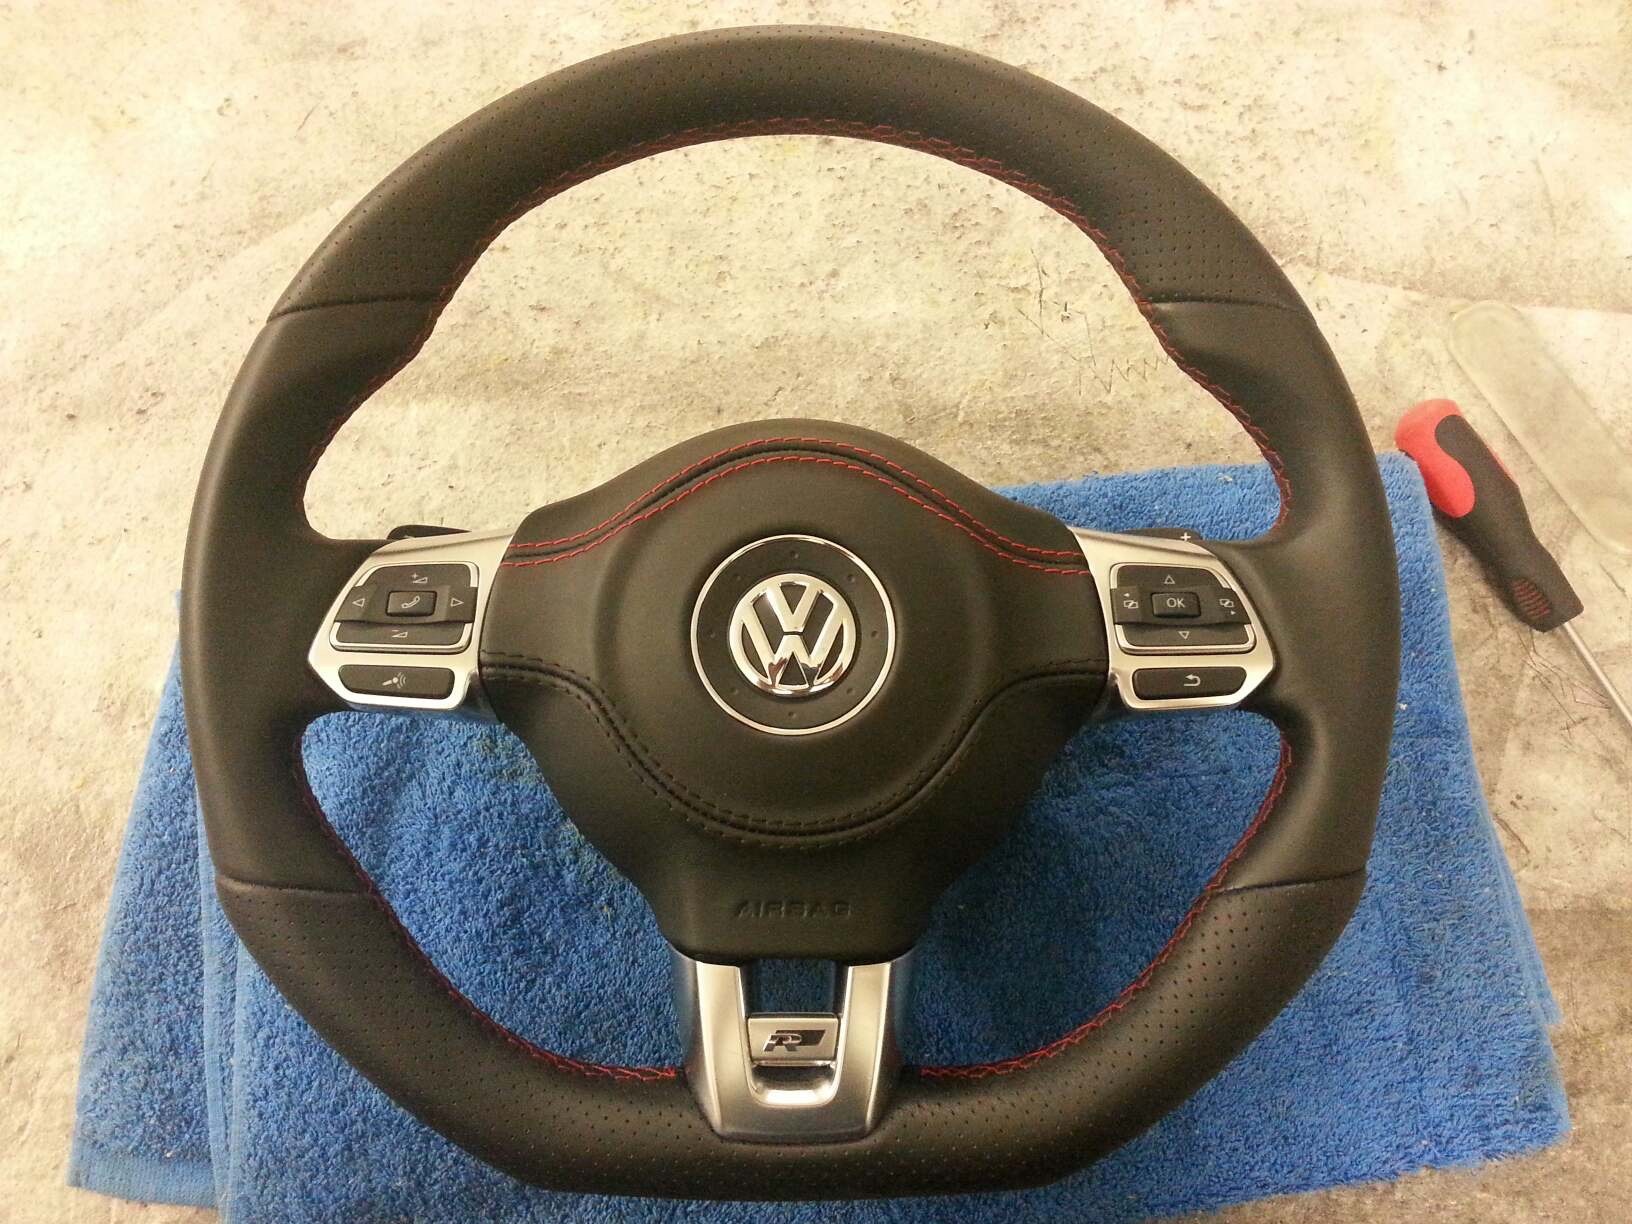 Рулевая подушка безопасности. Руль Фольксваген Пассат б6. Руль Фольксваген Пассат б7. Volkswagen Passat руль 2013 airbag. Passat b6 airbag.